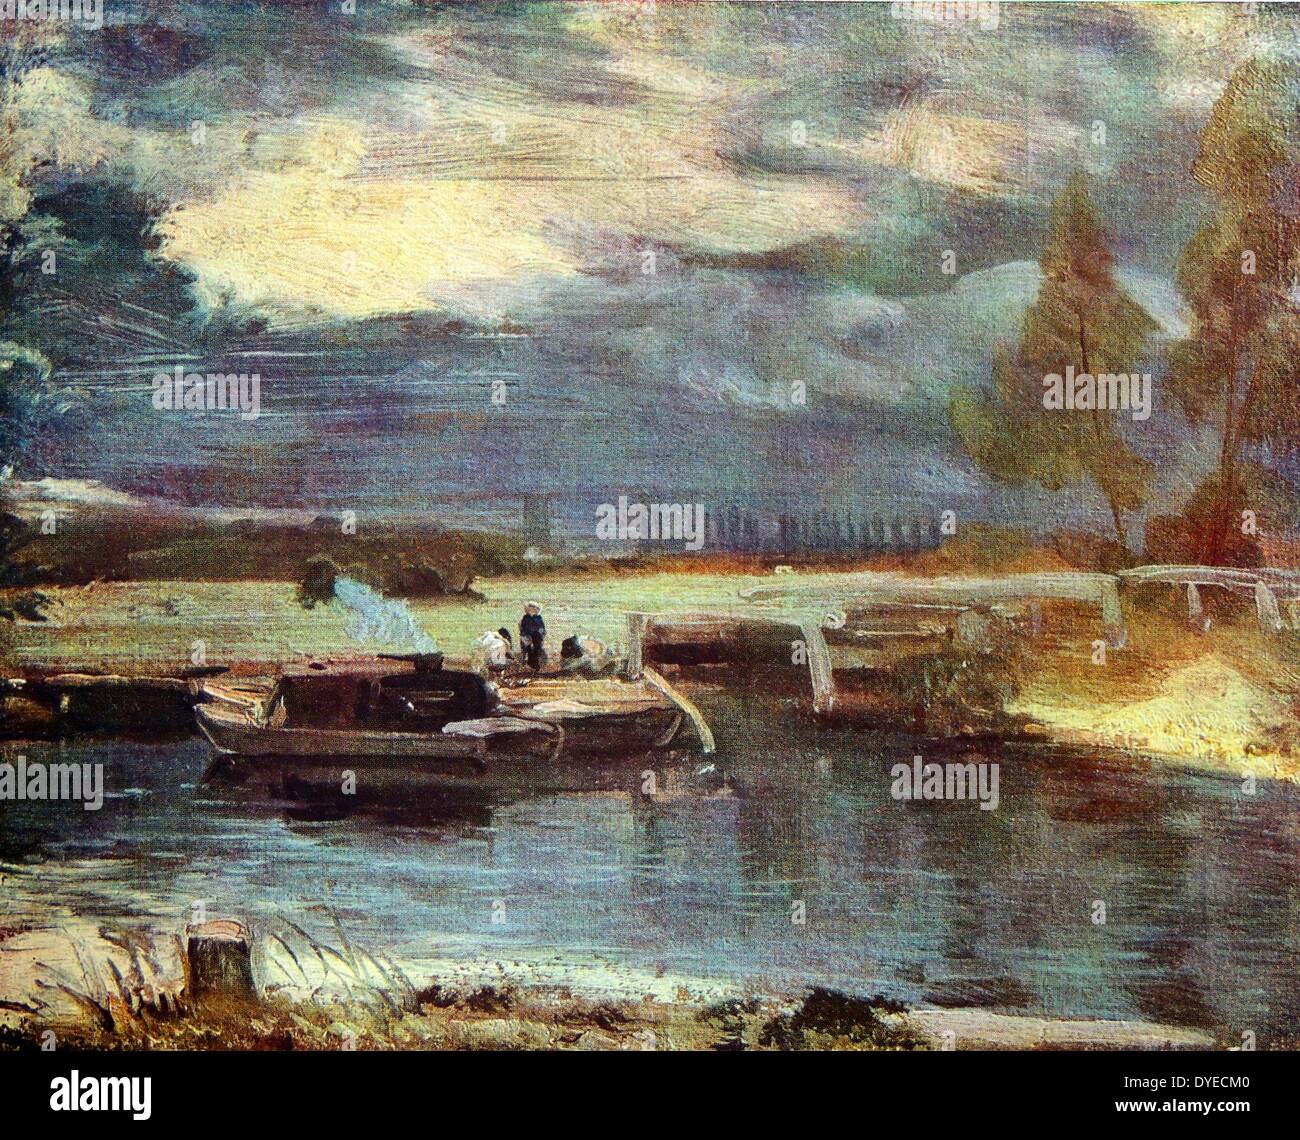 La peinture de paysage huile intitulée 'bateaux sur la Stour'. La rivière Stour traverse le Dedham Vale dans le village de Dedham. La peinture montre un bateau sur l'East Anglian Stour avec l'église de Dedham dans l'arrière-plan. Par John Constable (1776 - 1837) peintre romantique anglais connu pour ses peintures de paysage. Datée 1811 Banque D'Images